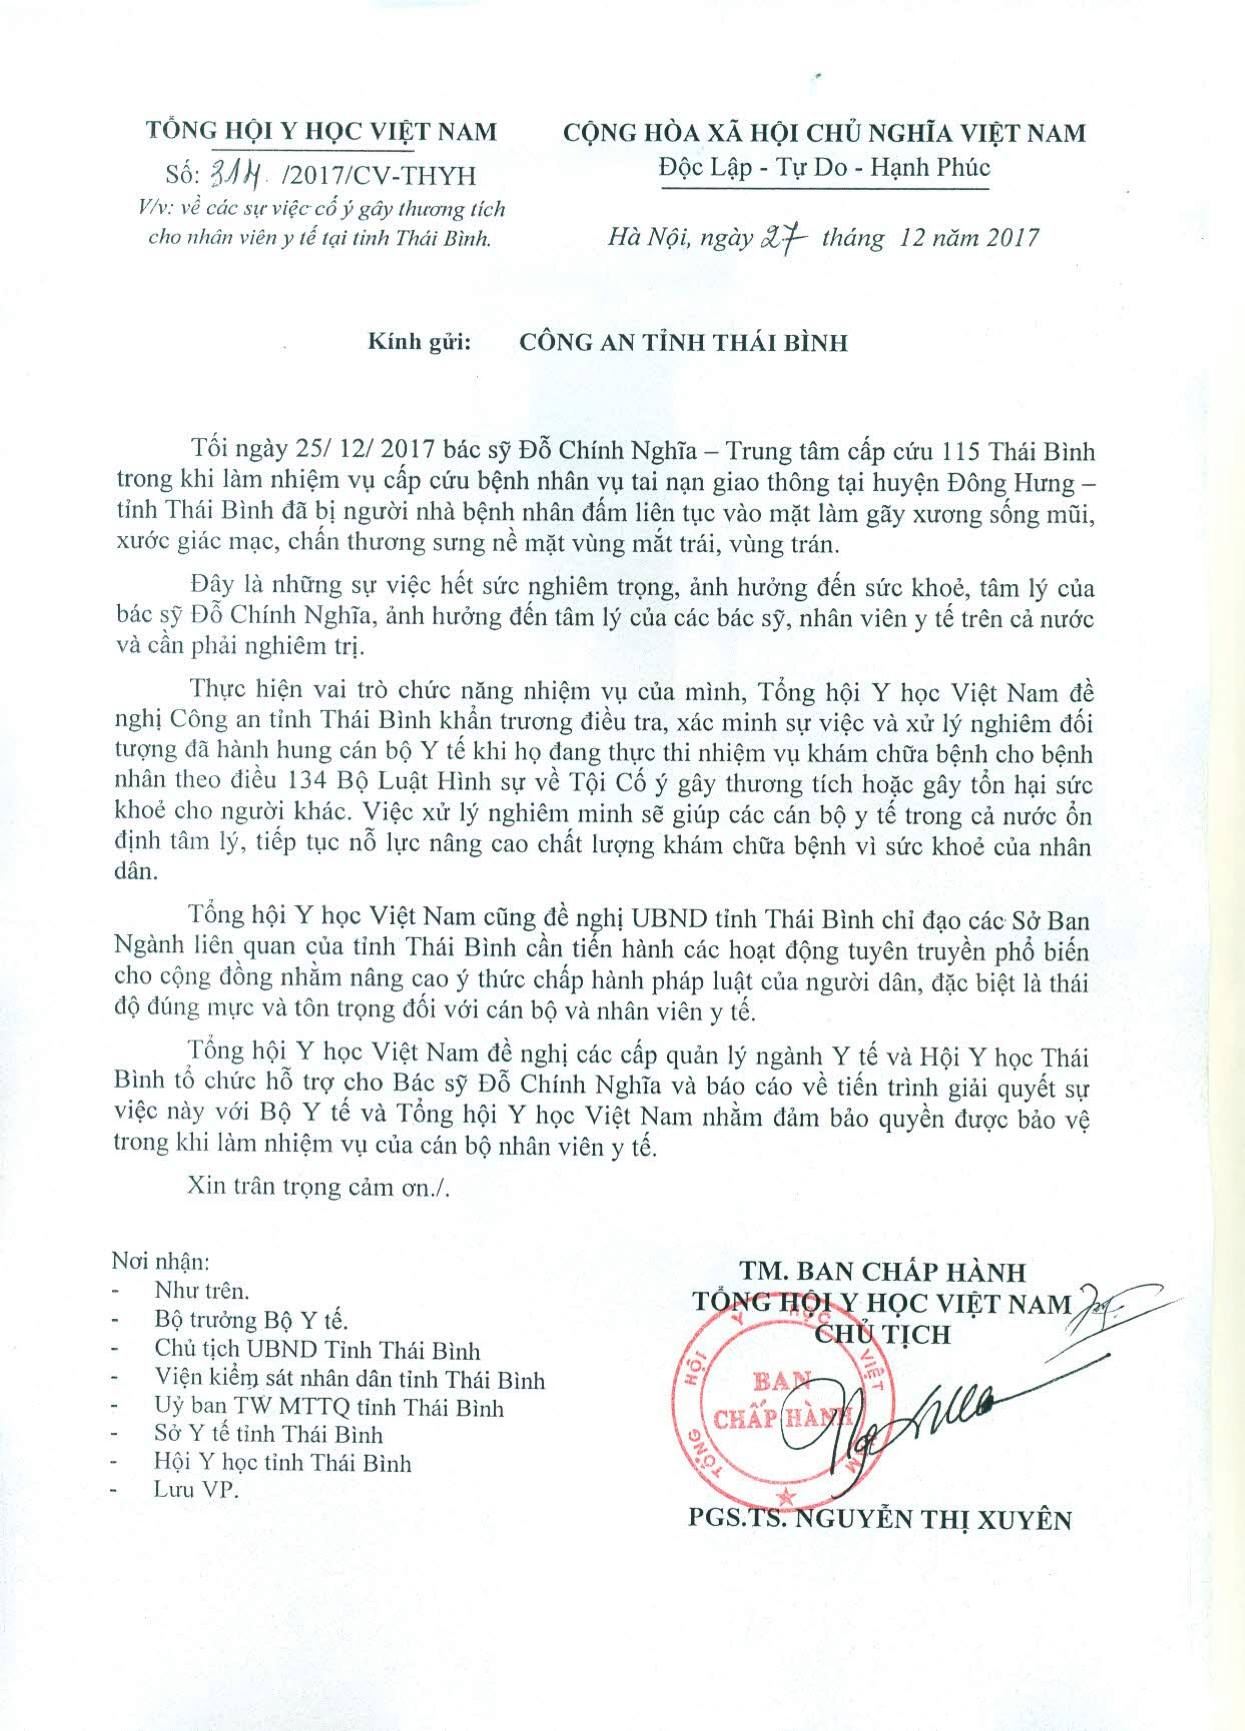 Công văn của Tổng hội Y học Việt Nam gửi Công an tỉnh Thái Bình